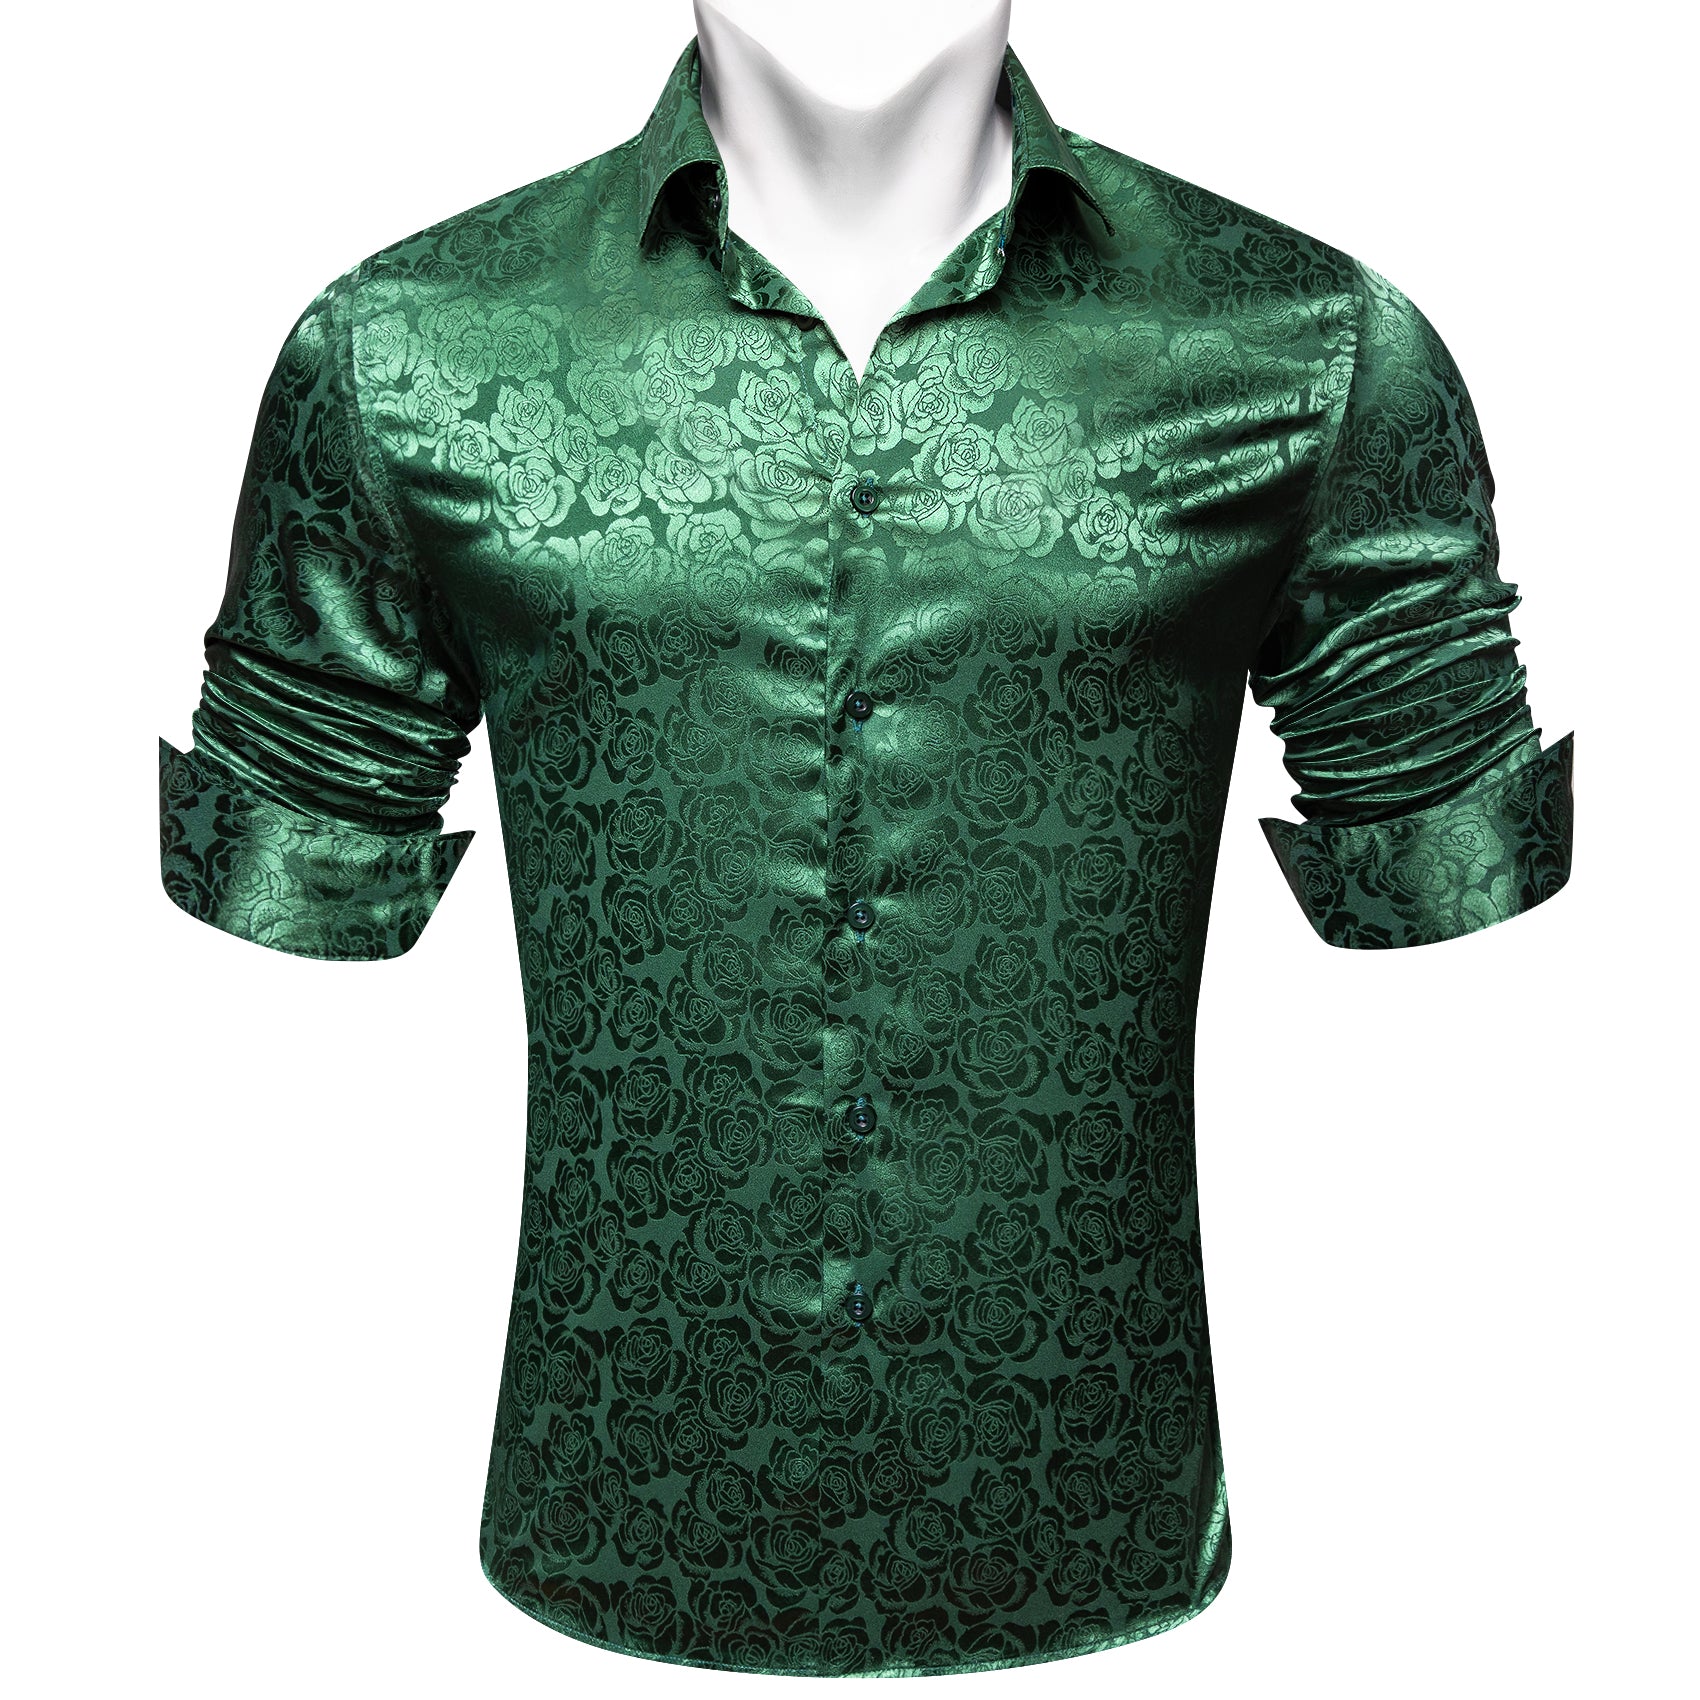 Barry.wang Beautiful Green Print Flower Silk Men's Shirt